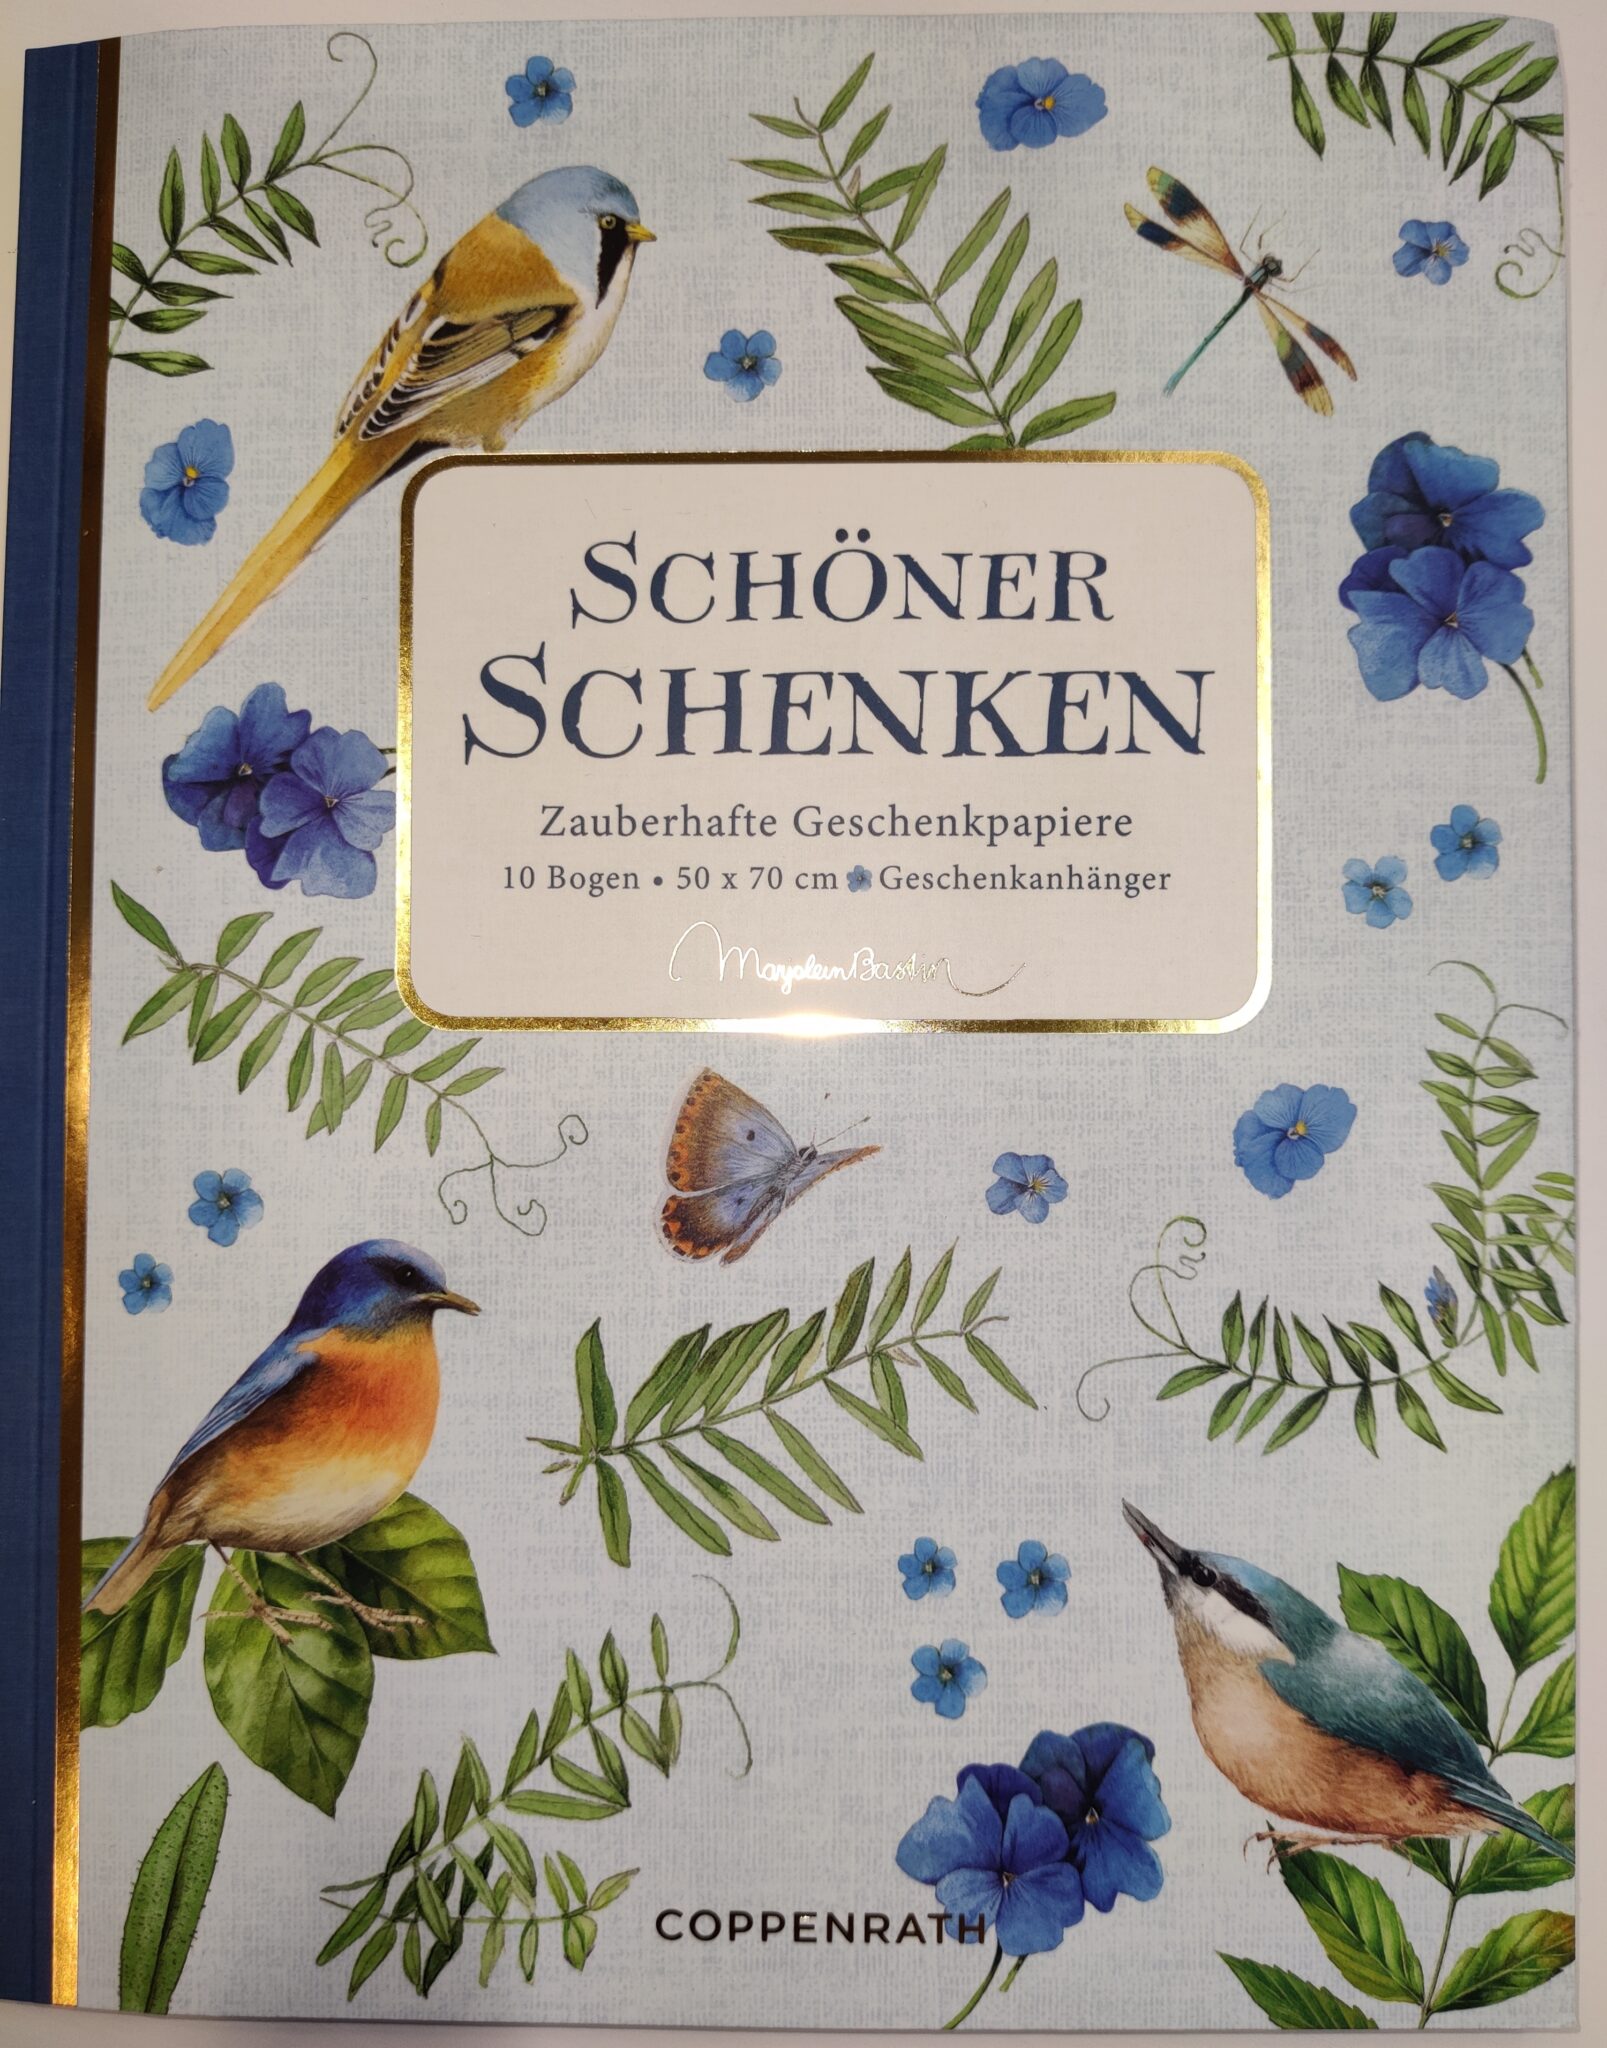 Geschenkpapierbuch "Schöner Schenken"